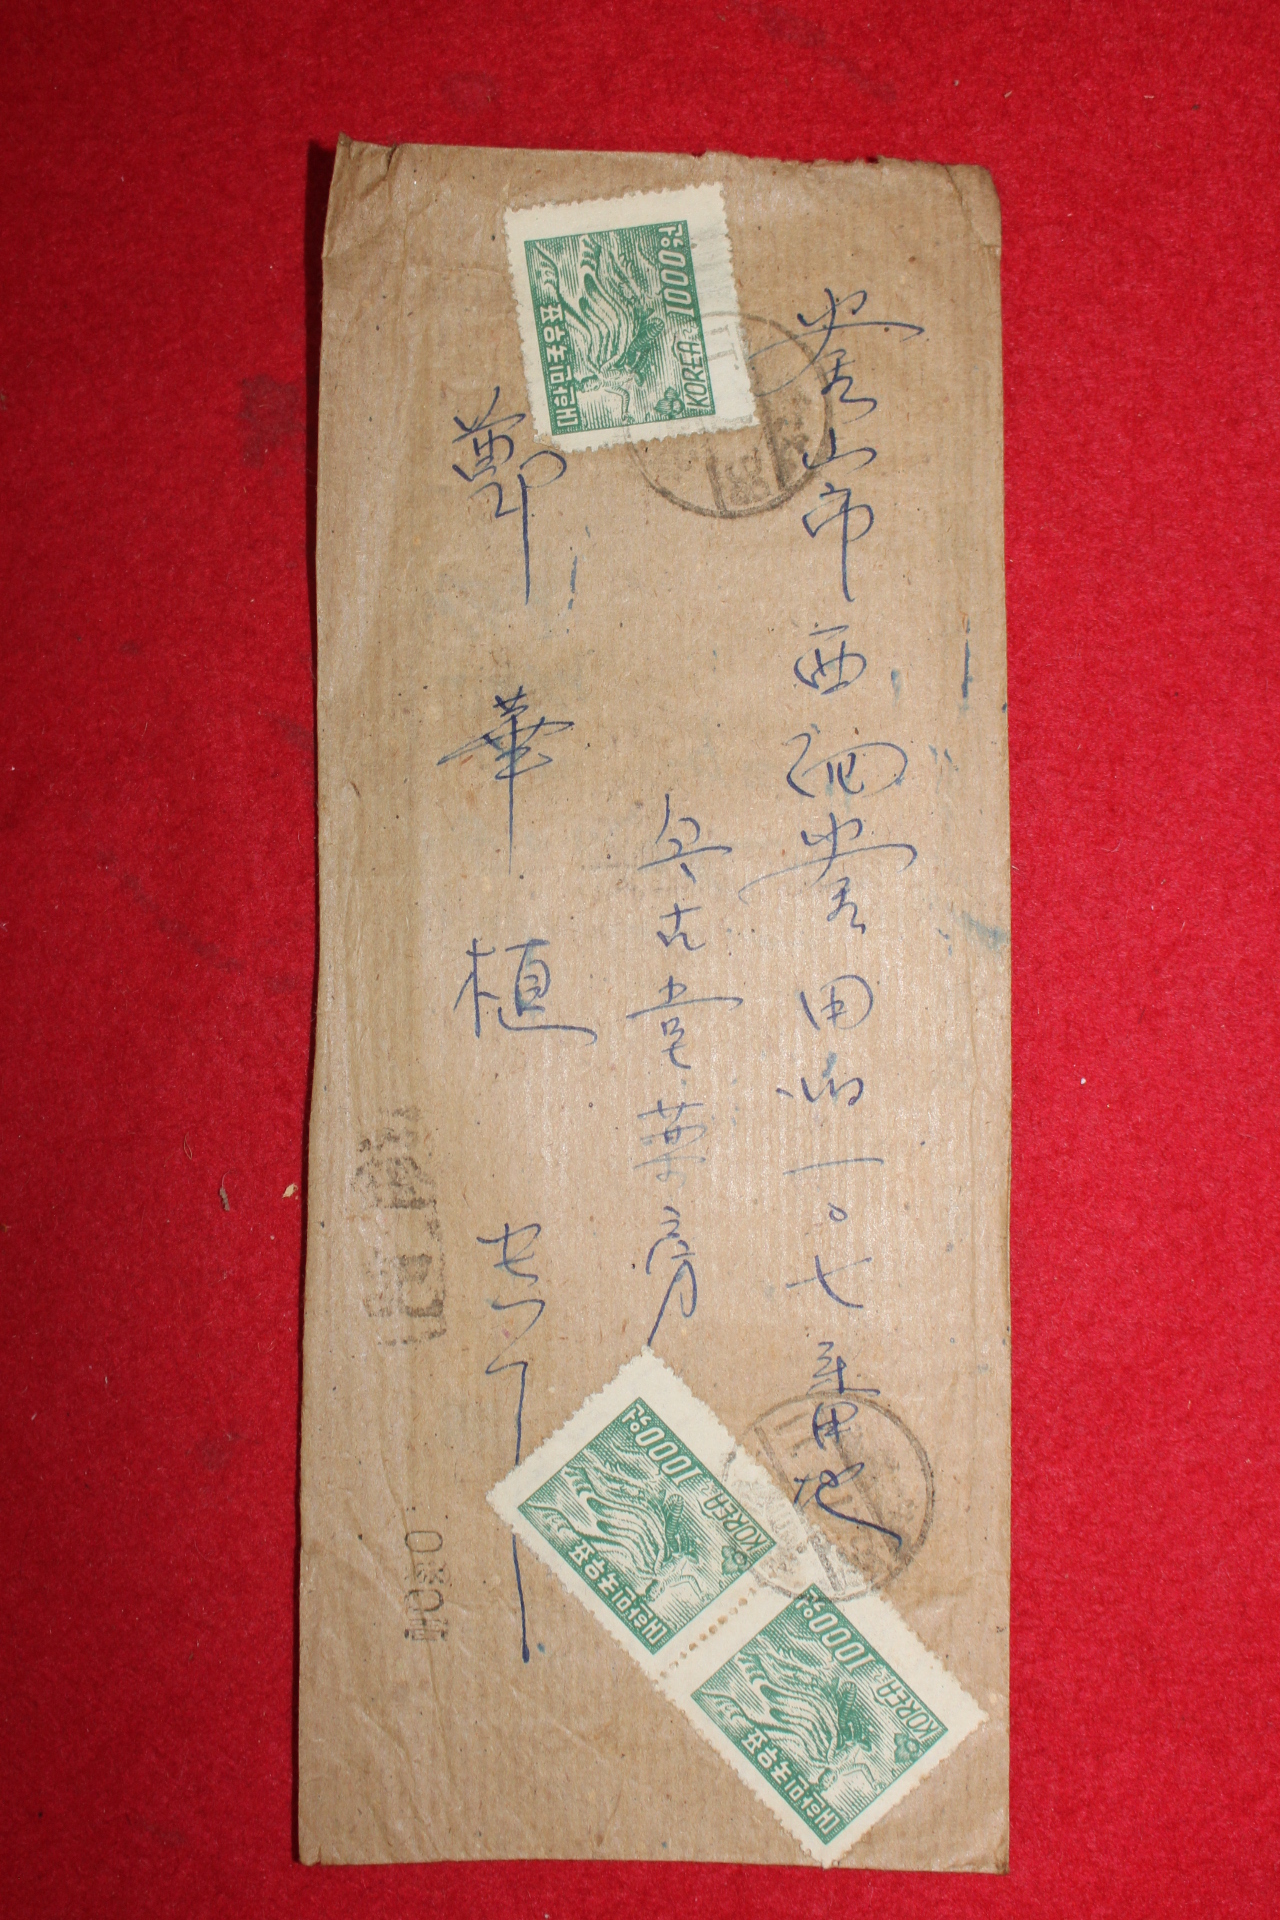 13-1953년 우편 편지봉투사용실체